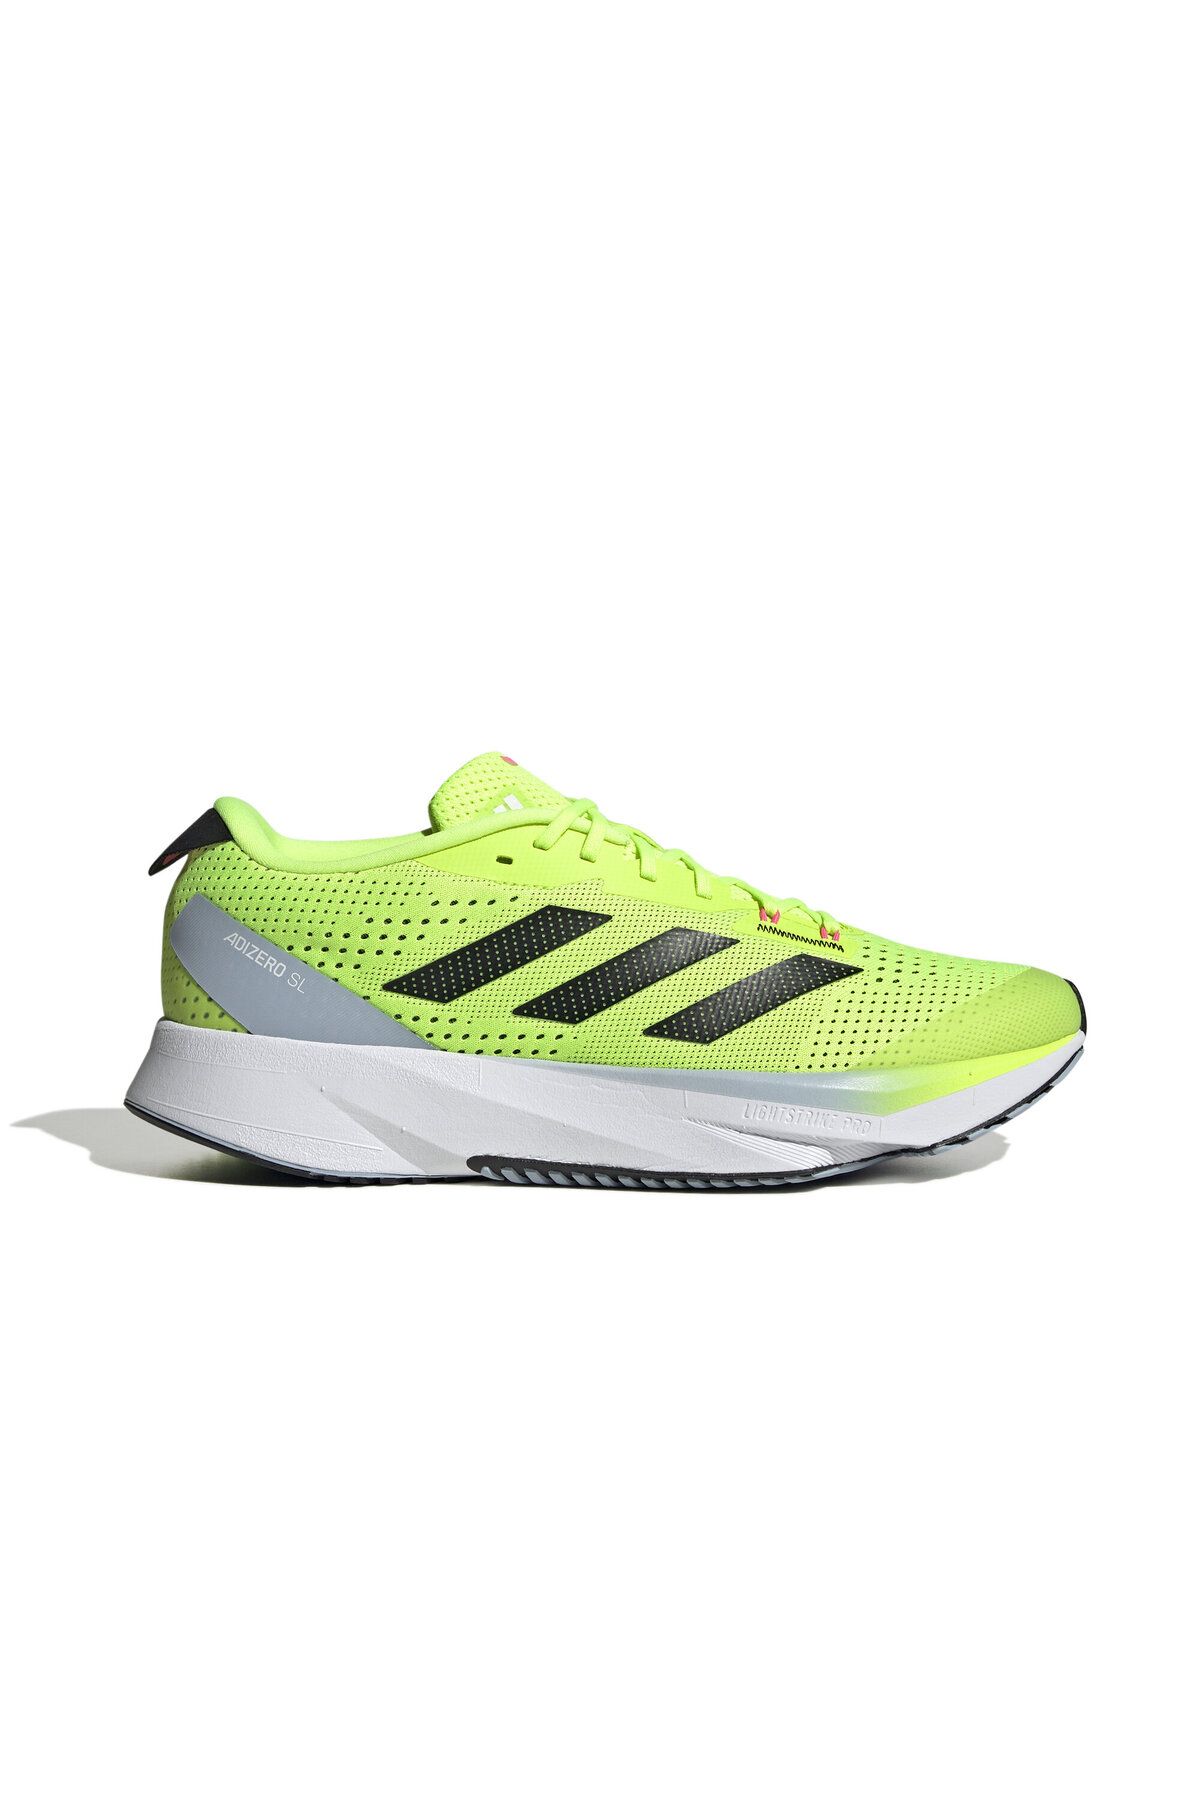 adidas Adizero Sl Erkek Koşu Ayakkabısı HQ7231 Yeşil